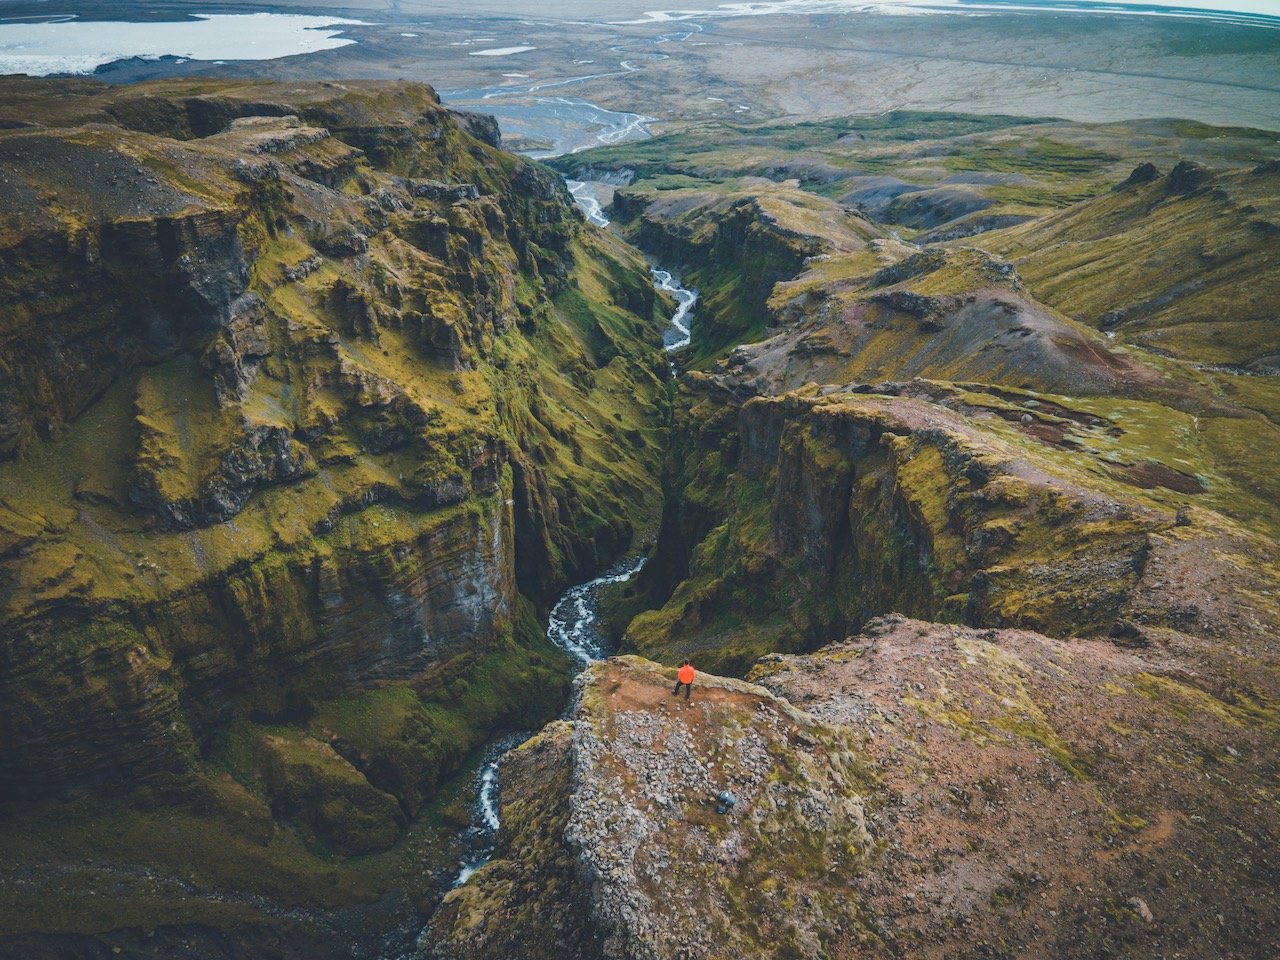   Múlagljúfur Canyon, Iceland (ISO 100, 4.5 mm,  f /2.8, 1/20 s)  